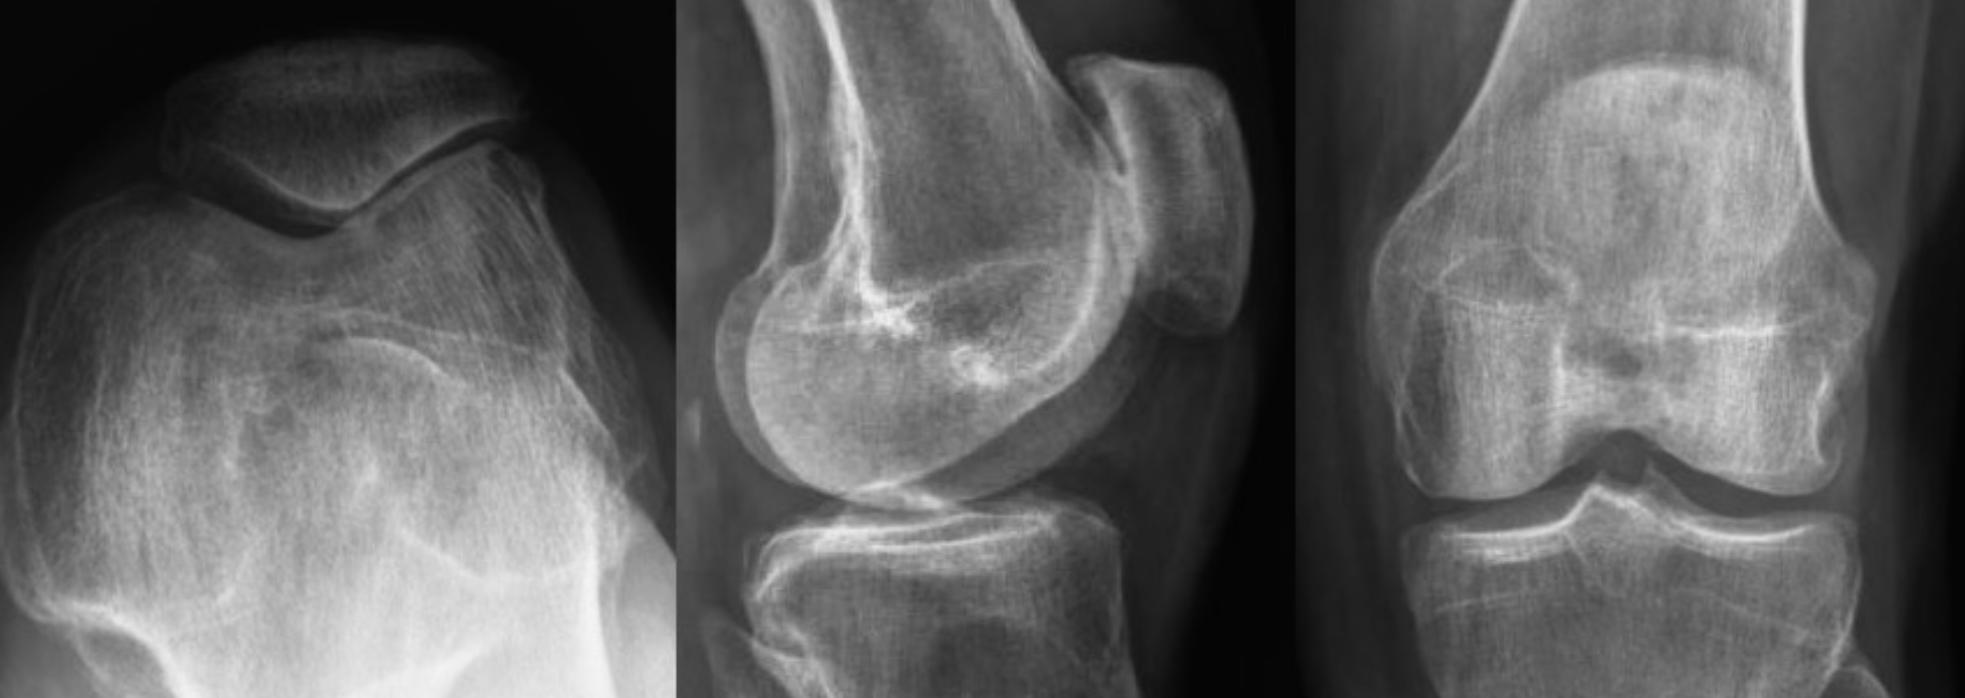 Knee x-rays